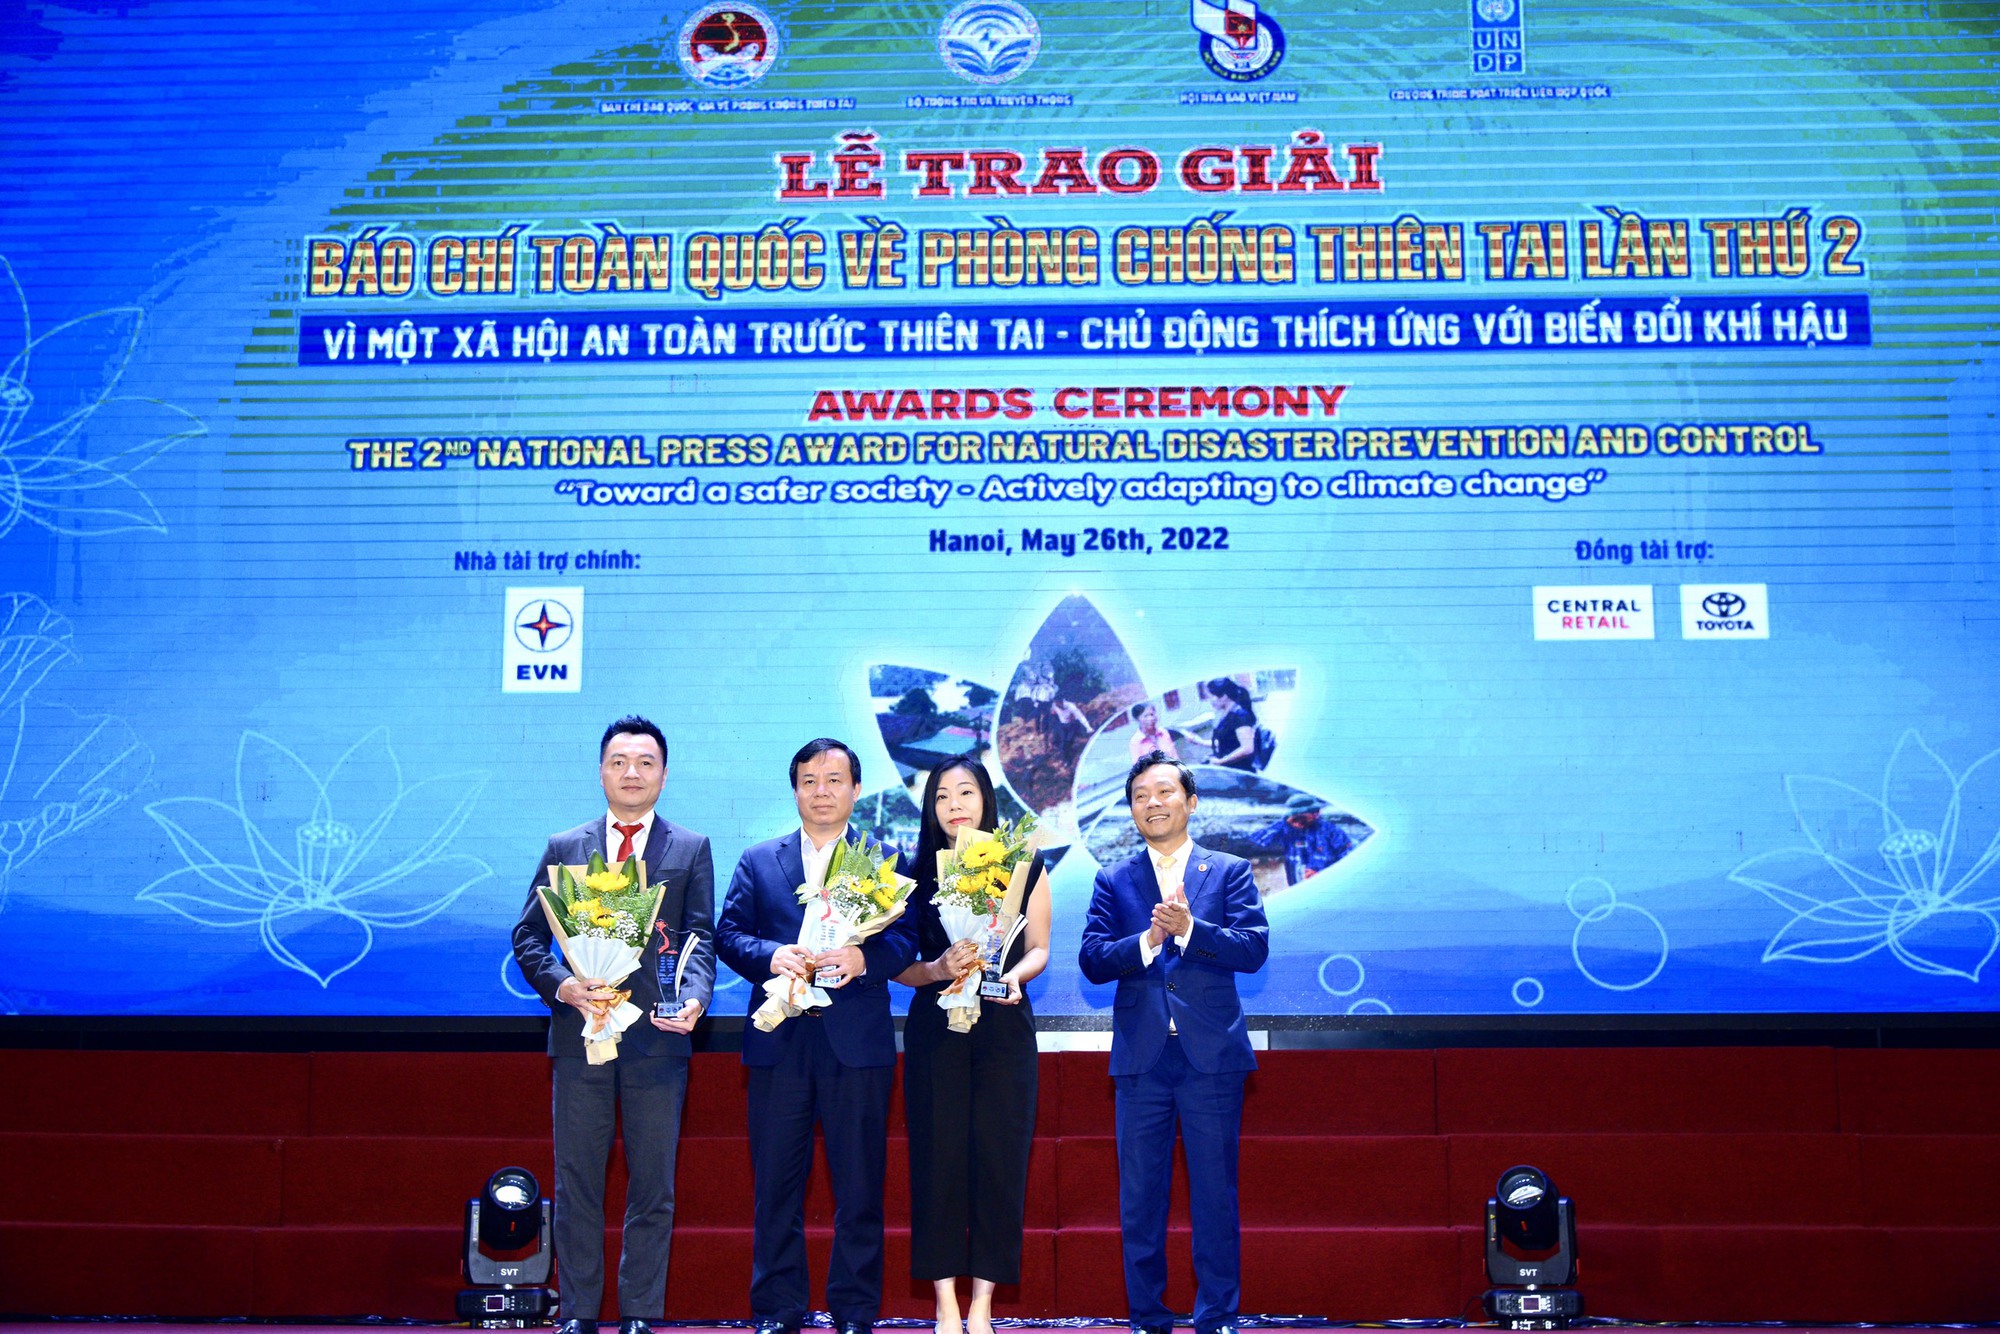 Video: Báo Nông thôn Ngày nay/Dân Việt được trao tặng nhiều giải thưởng về công tác phòng chống thiên tai - Ảnh 3.